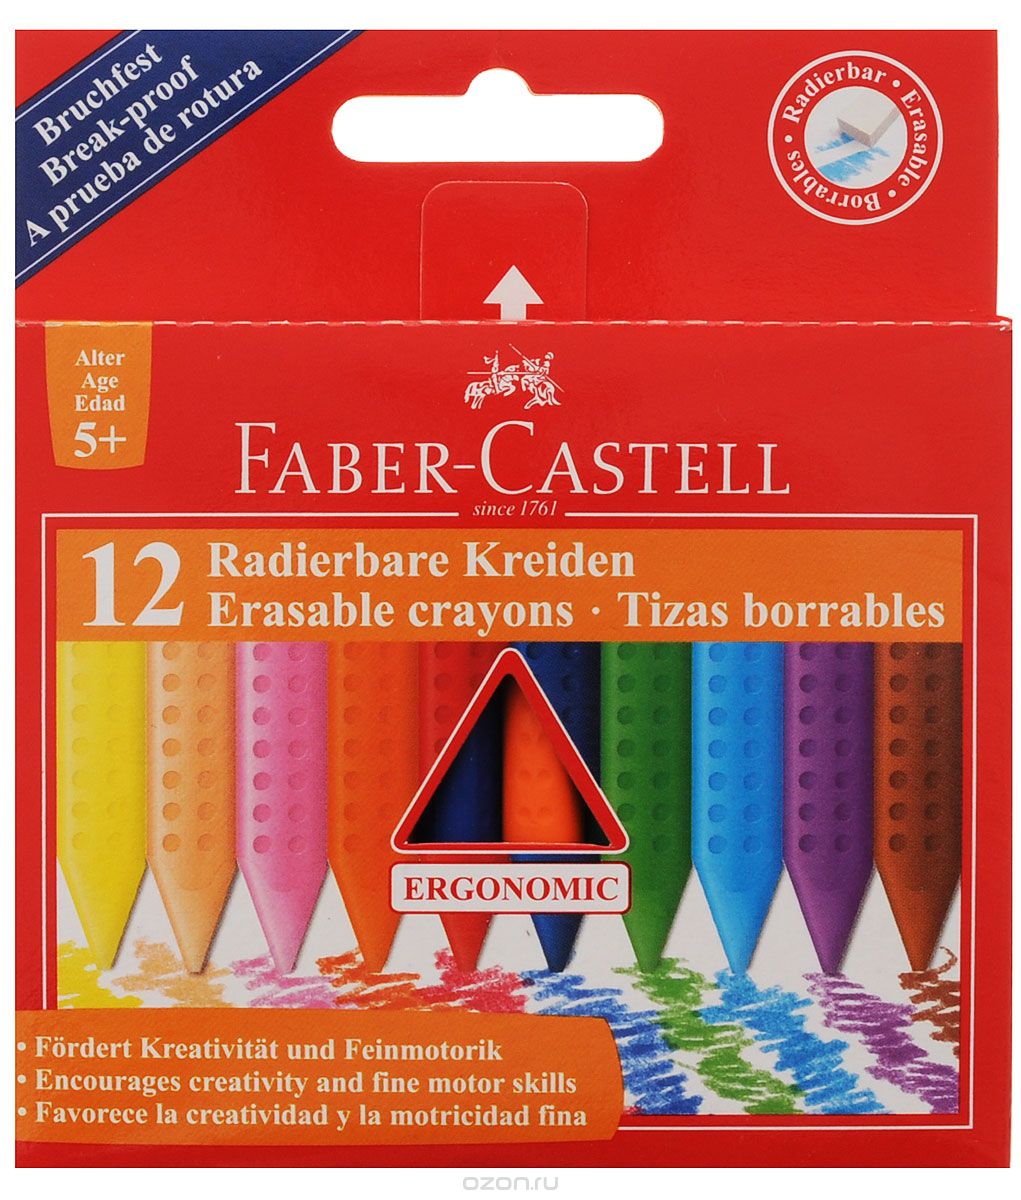 Faber-Castell   Radierbare Kreiden  12 